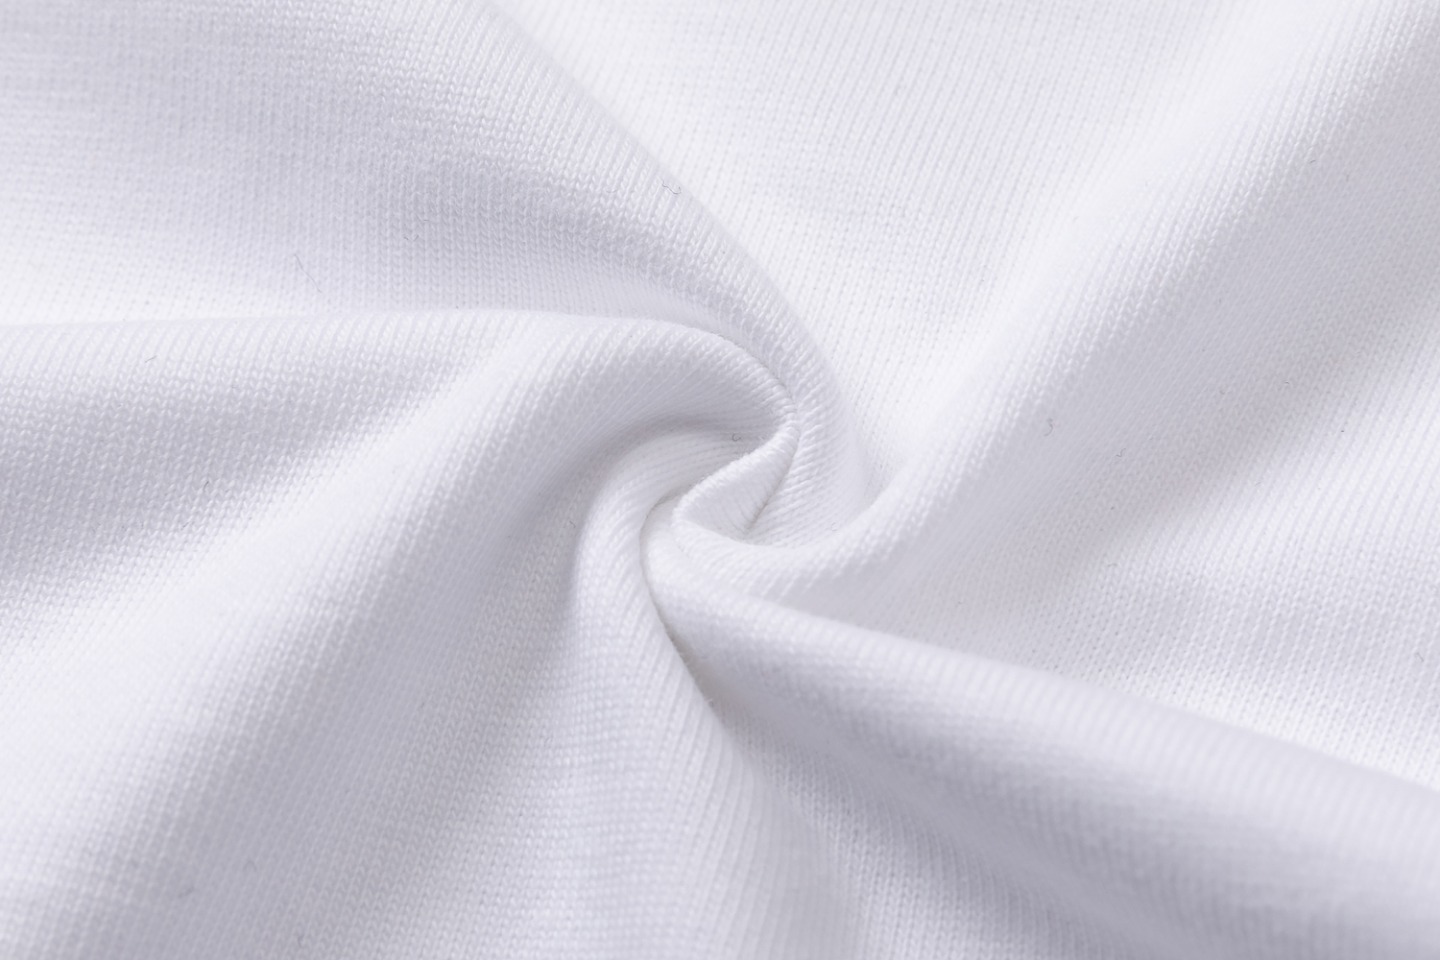 AMIRI 爆買い品質保証 tシャツ 3dモデルスーパーコピー 半袖 柔らかい プリント 純綿 ファッション トップス  2色可選_9